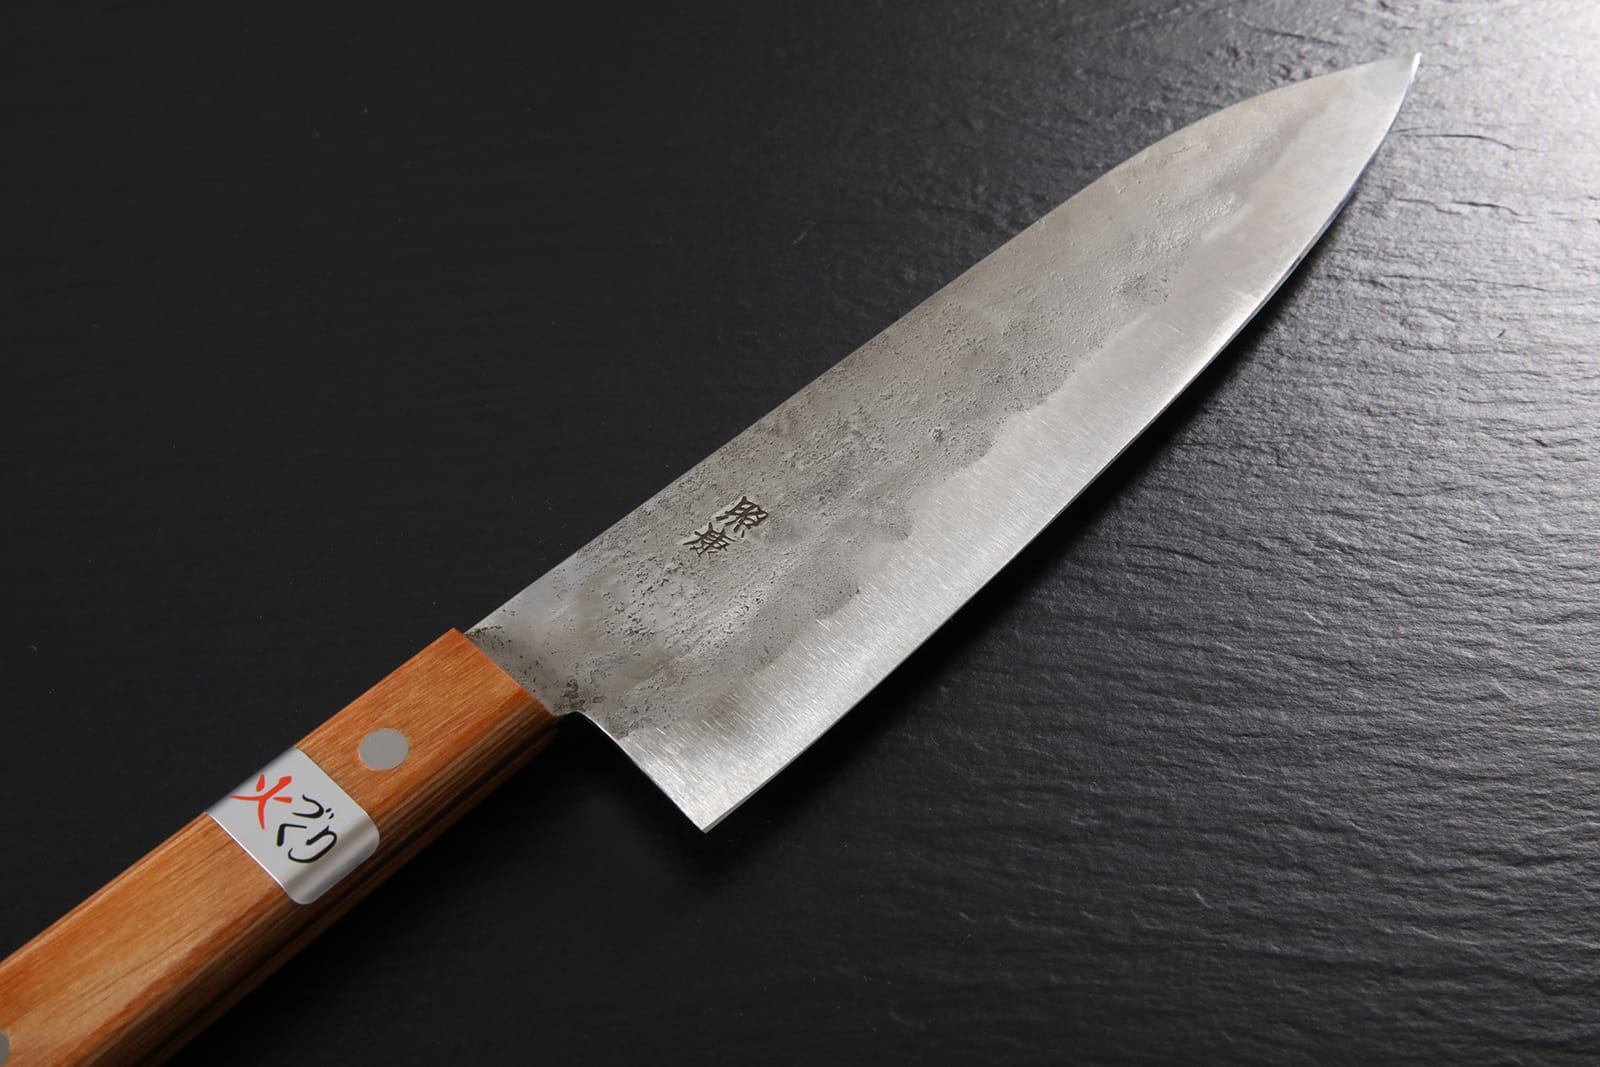 Japanese Gyuto knife [Nashiji], Gyuto Knife, Japanese Knives